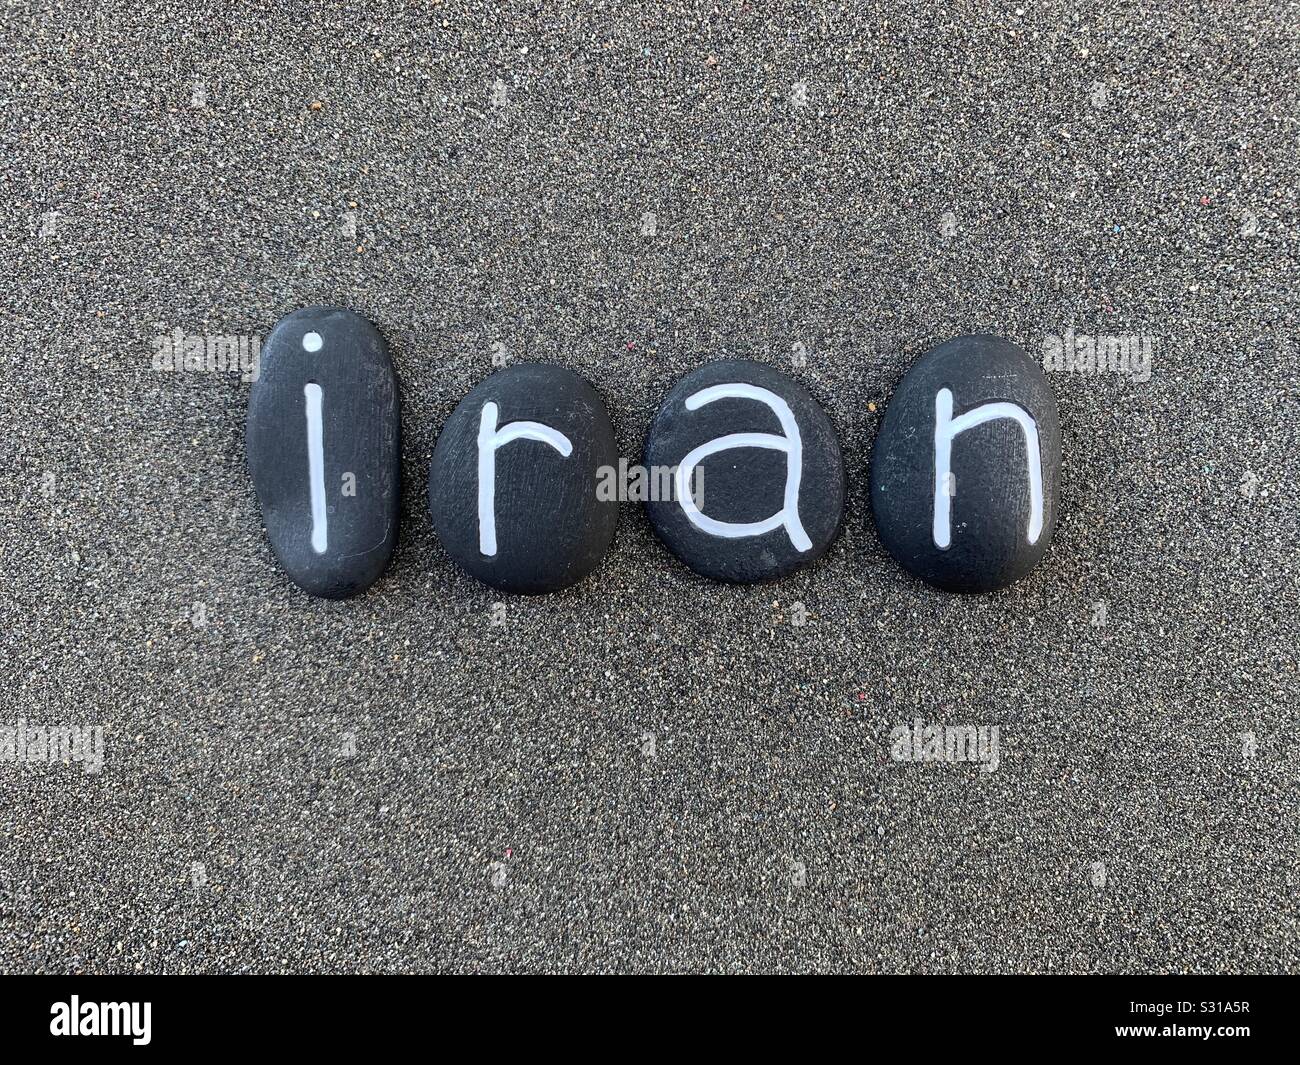 Irán, República Islámica del Irán, recuerdo con compuesto con letras de piedra de color negro a lo largo de arena volcánica negra Foto de stock